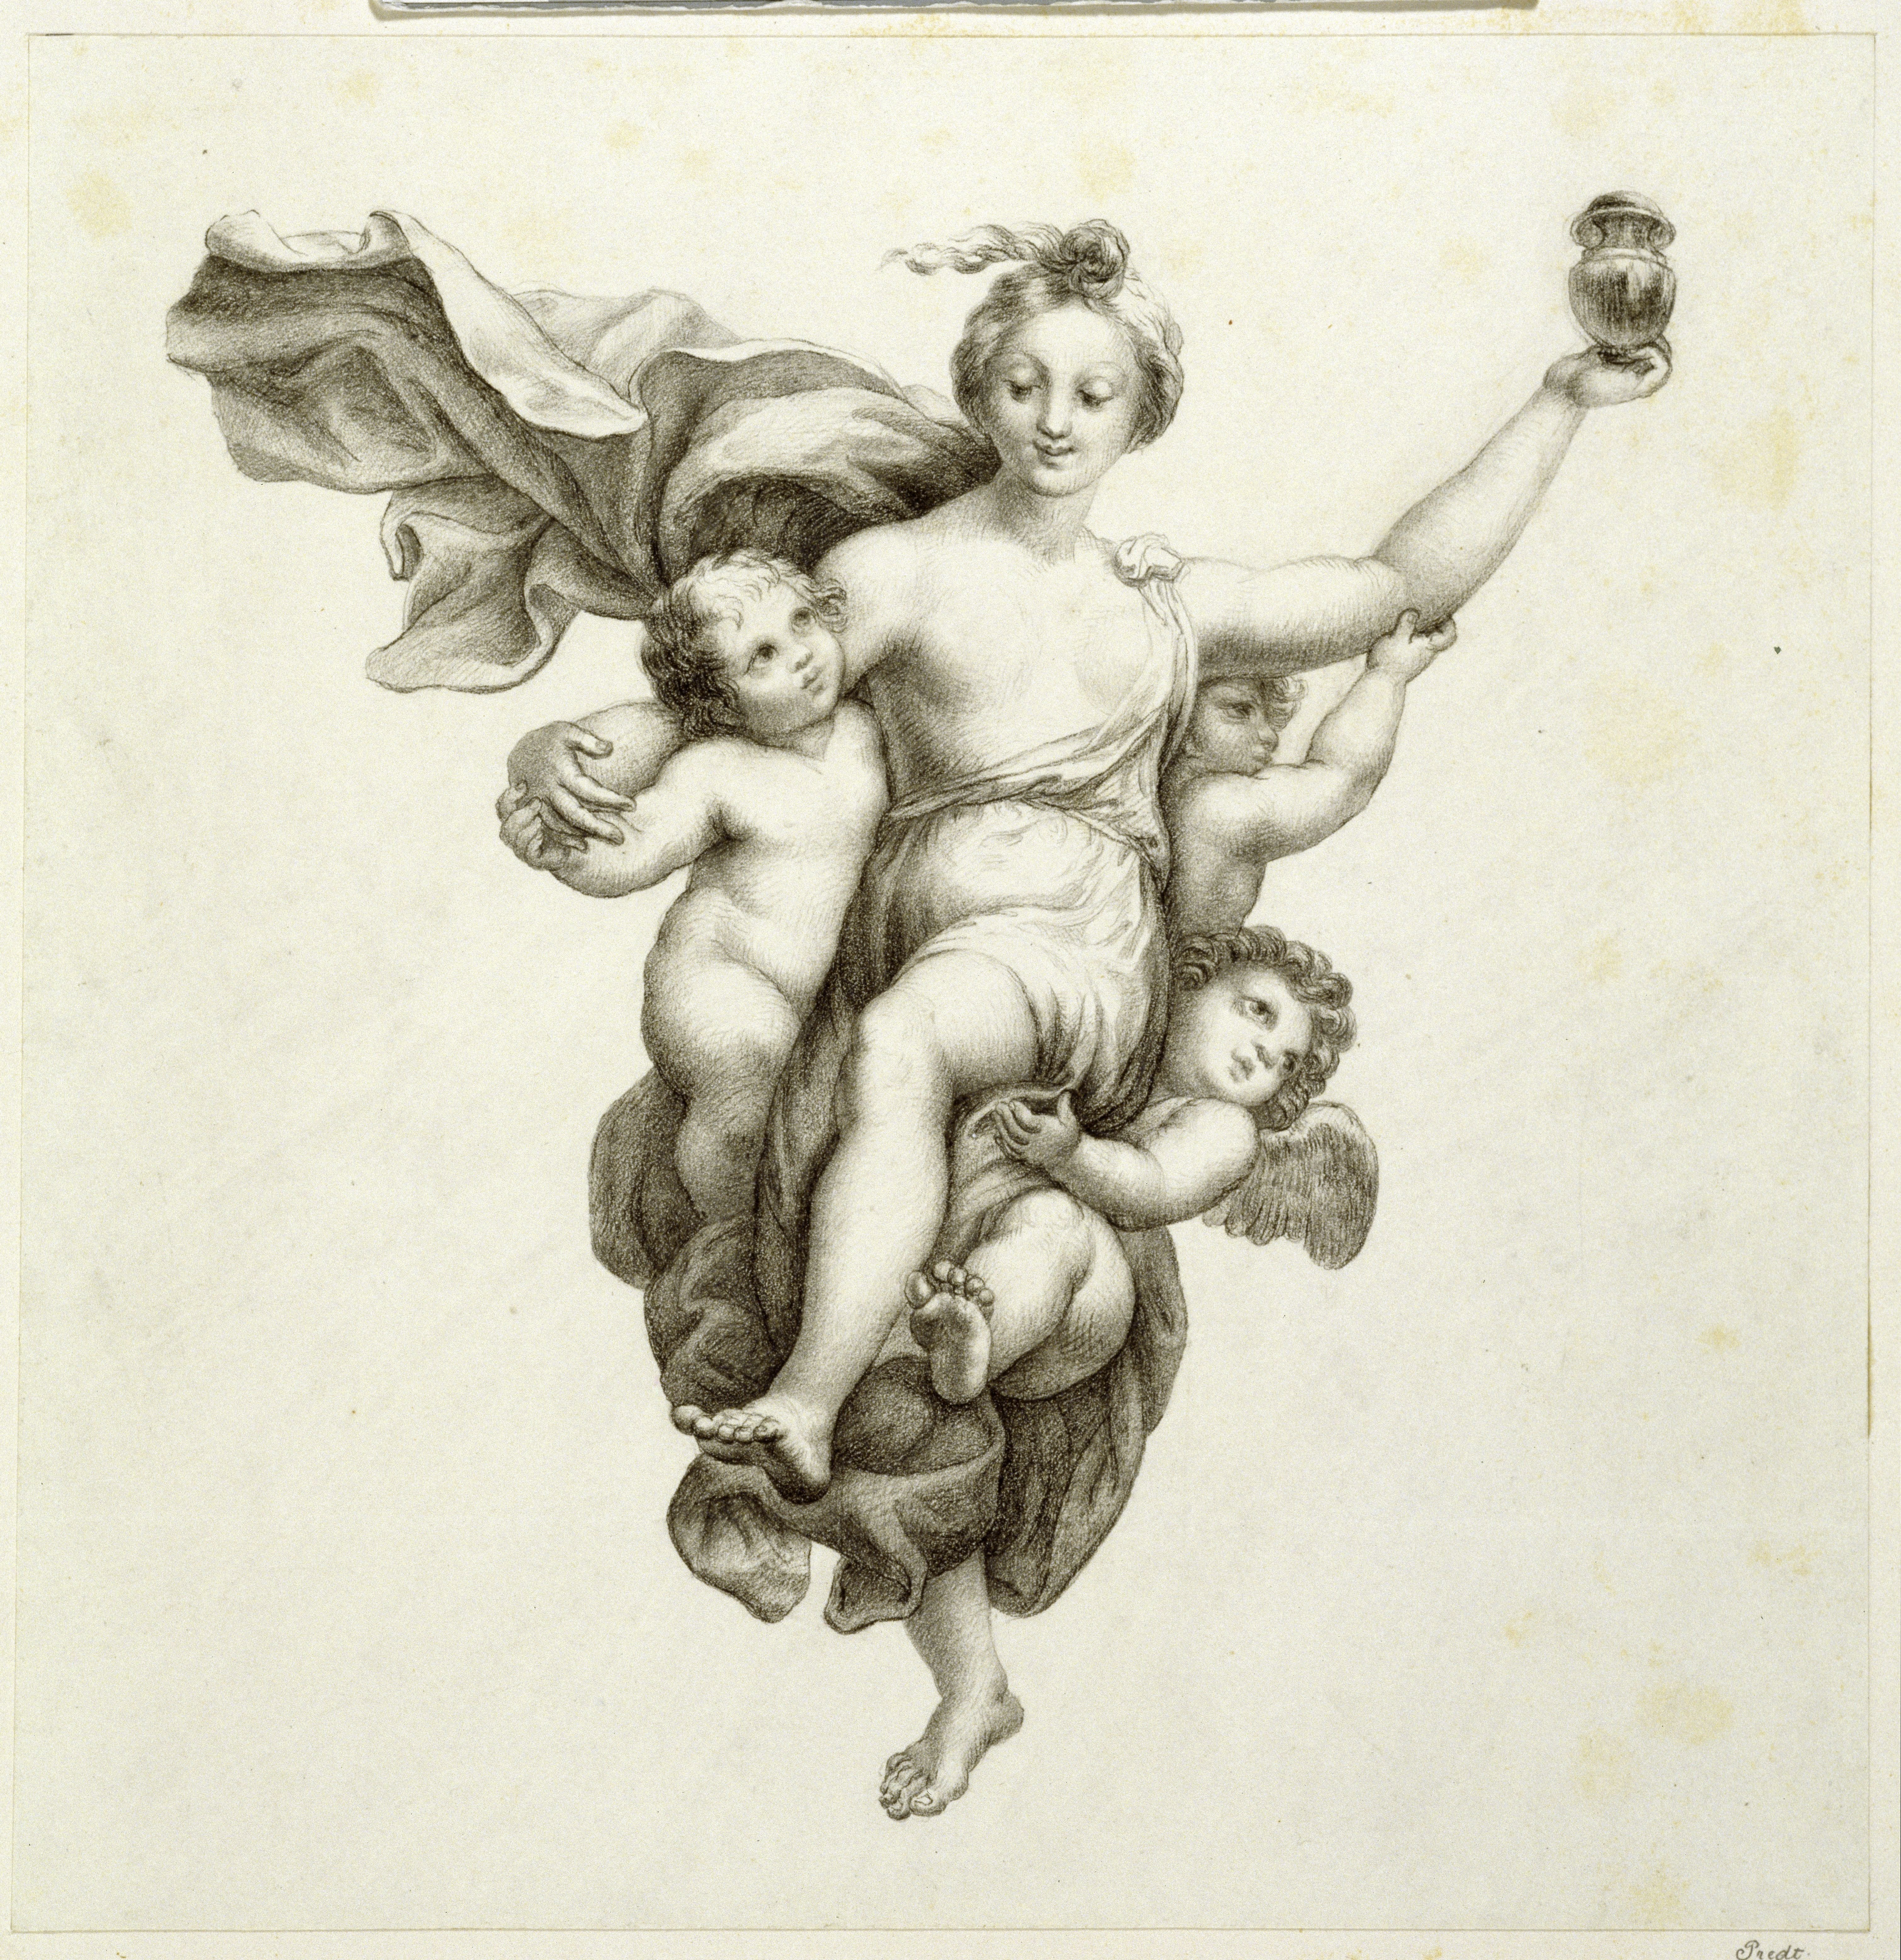 Predl, Katharina von: Psyche wird von Genien zum Palast der Venus getragen, 1823, SPSG, GK II (5) 2476. (Stiftung Preußische Schlösser und Gärten Berlin-Brandenburg CC BY-NC-SA)